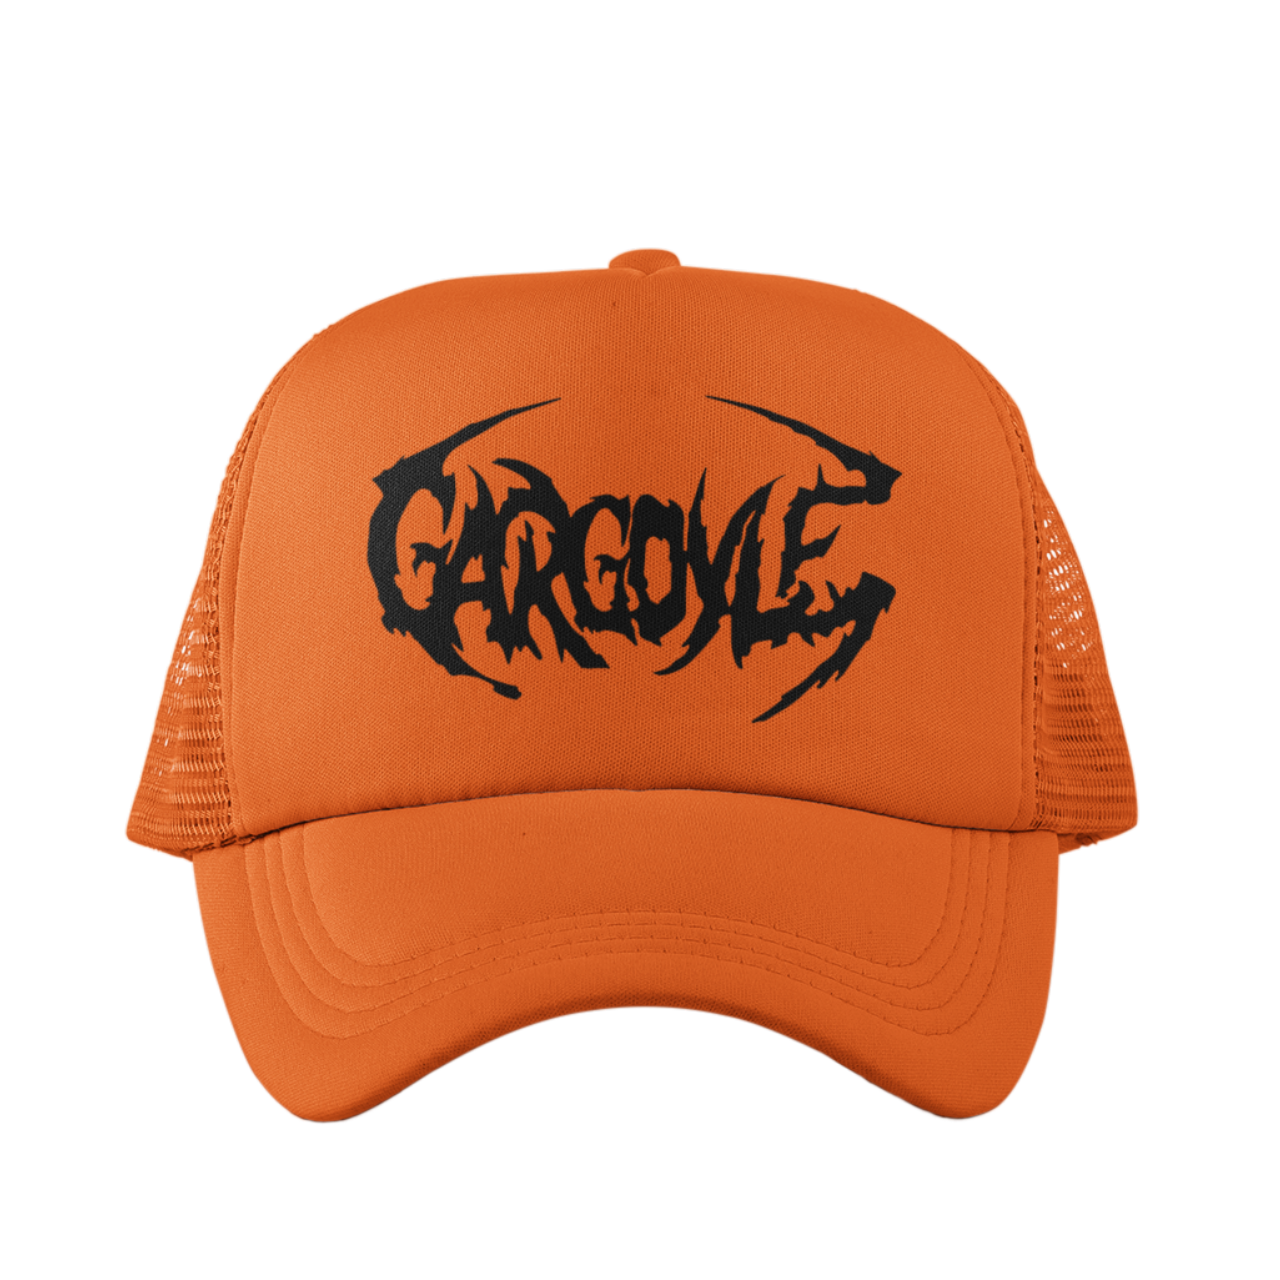 Organik Lyfestyle - Gargoyle G.A.N.G - Orange & Black Hat